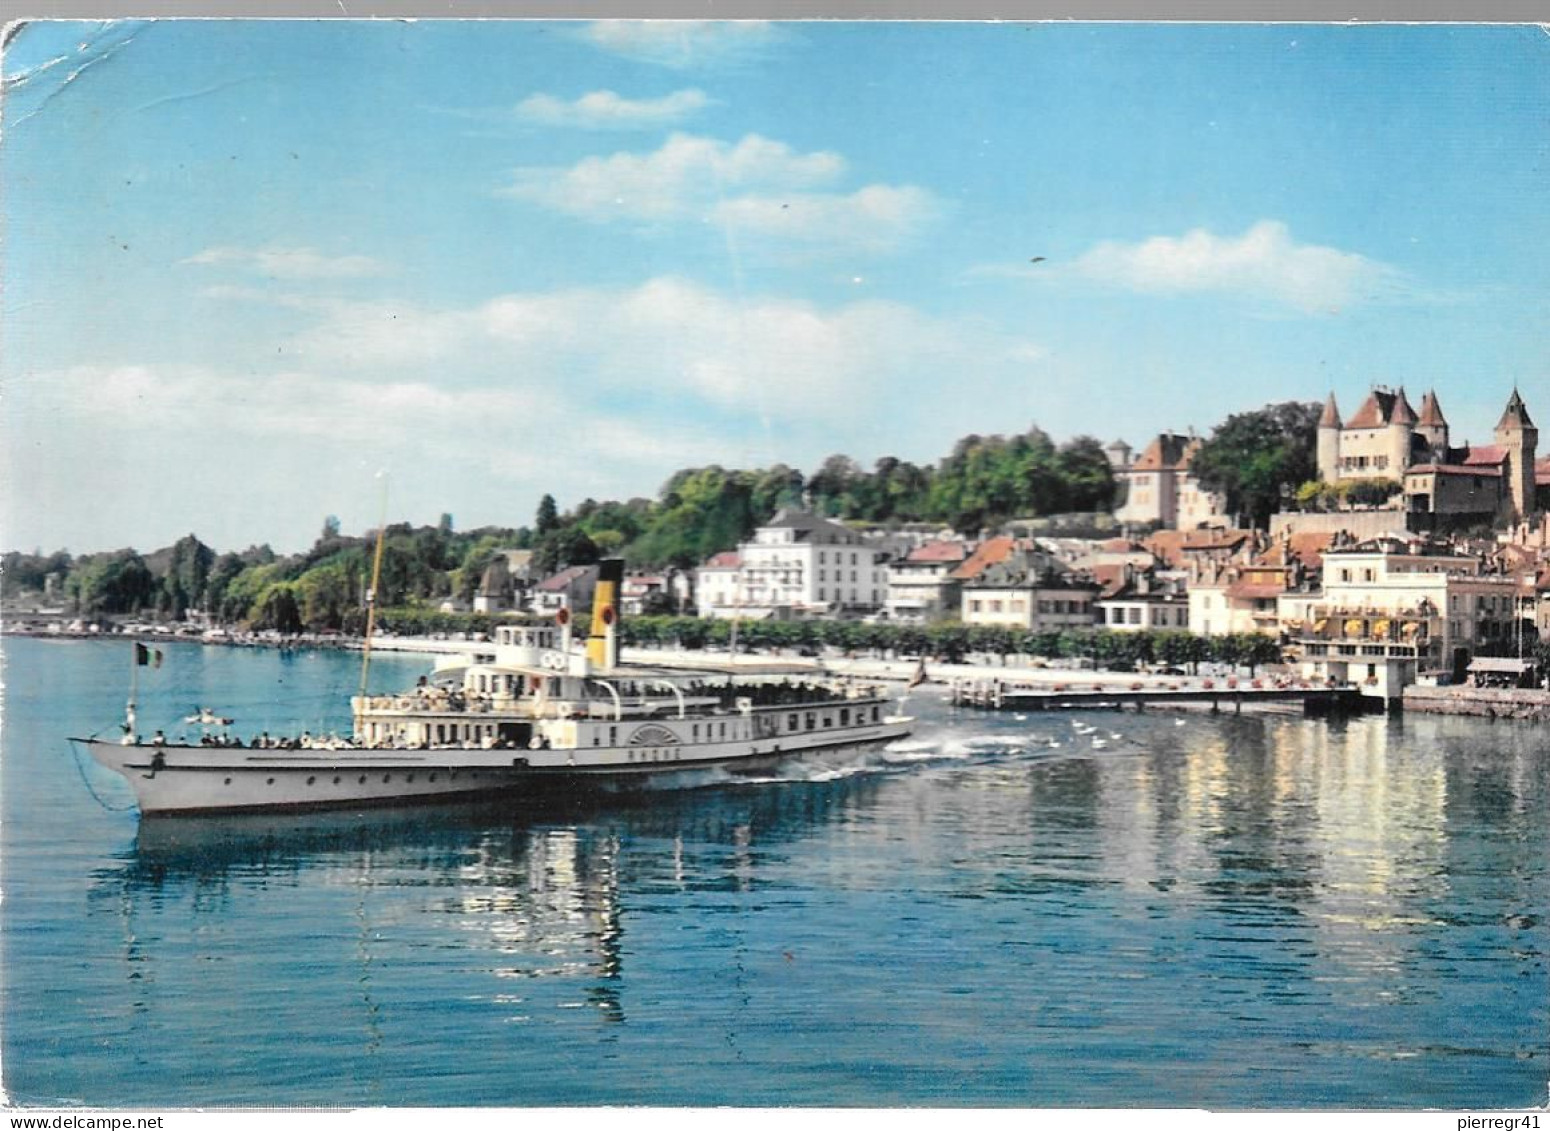 CPA-1965-SUISSE- NYON-Le Port Le Quai/-Départ Du Bateau Rhone-Edit Jeager-TBE - Nyon